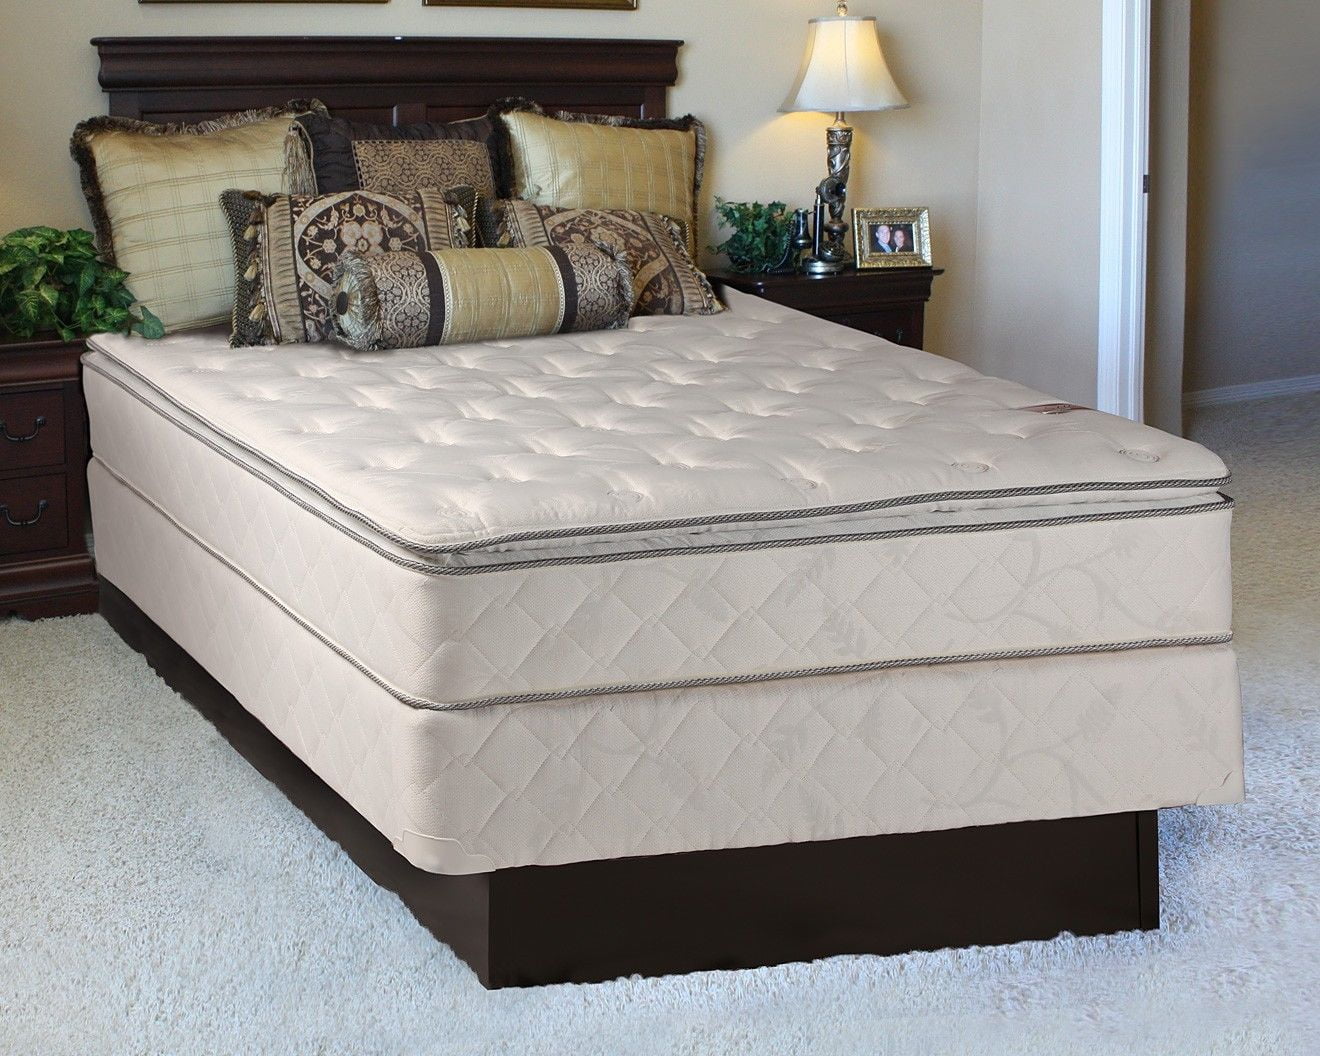 plush twin mattress set